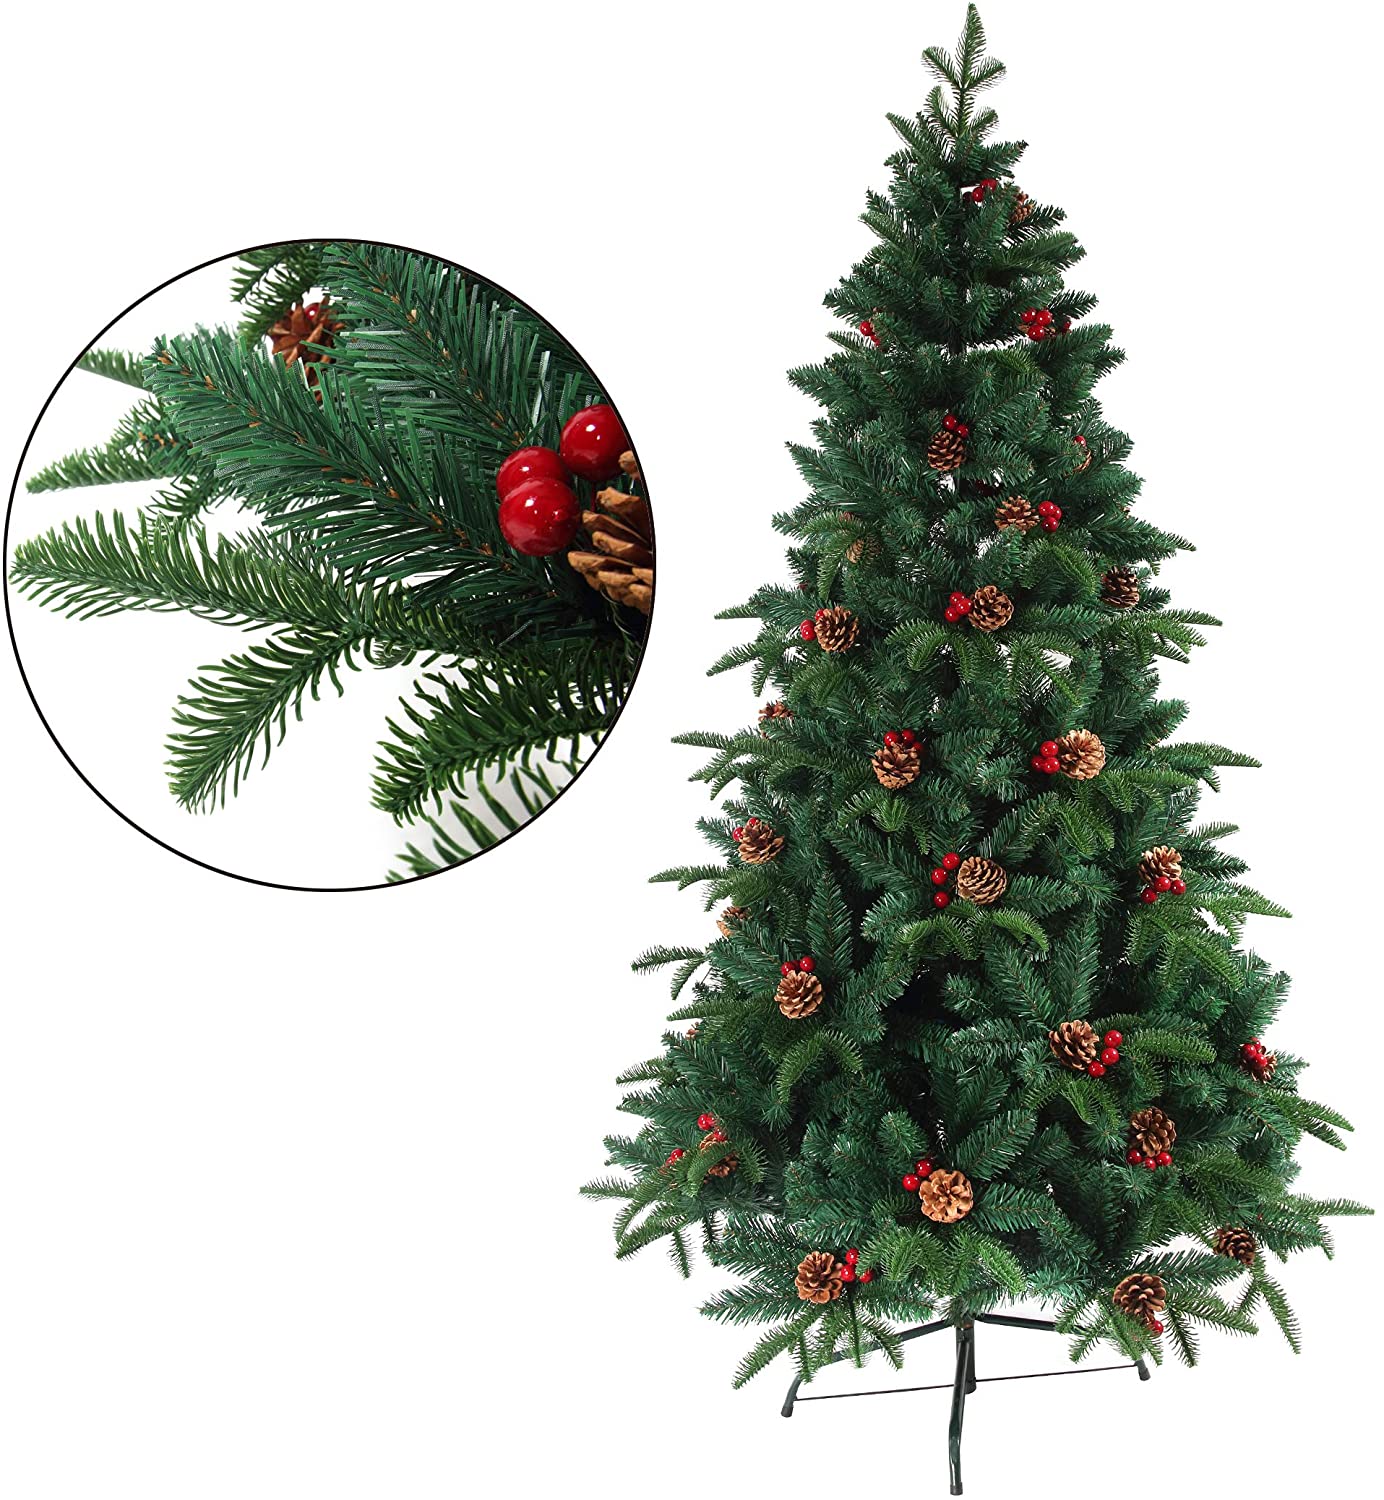 クリスマスツリー 枝大幅増量タイプ 松ぼっくり付き、赤い実付き、北欧 ...